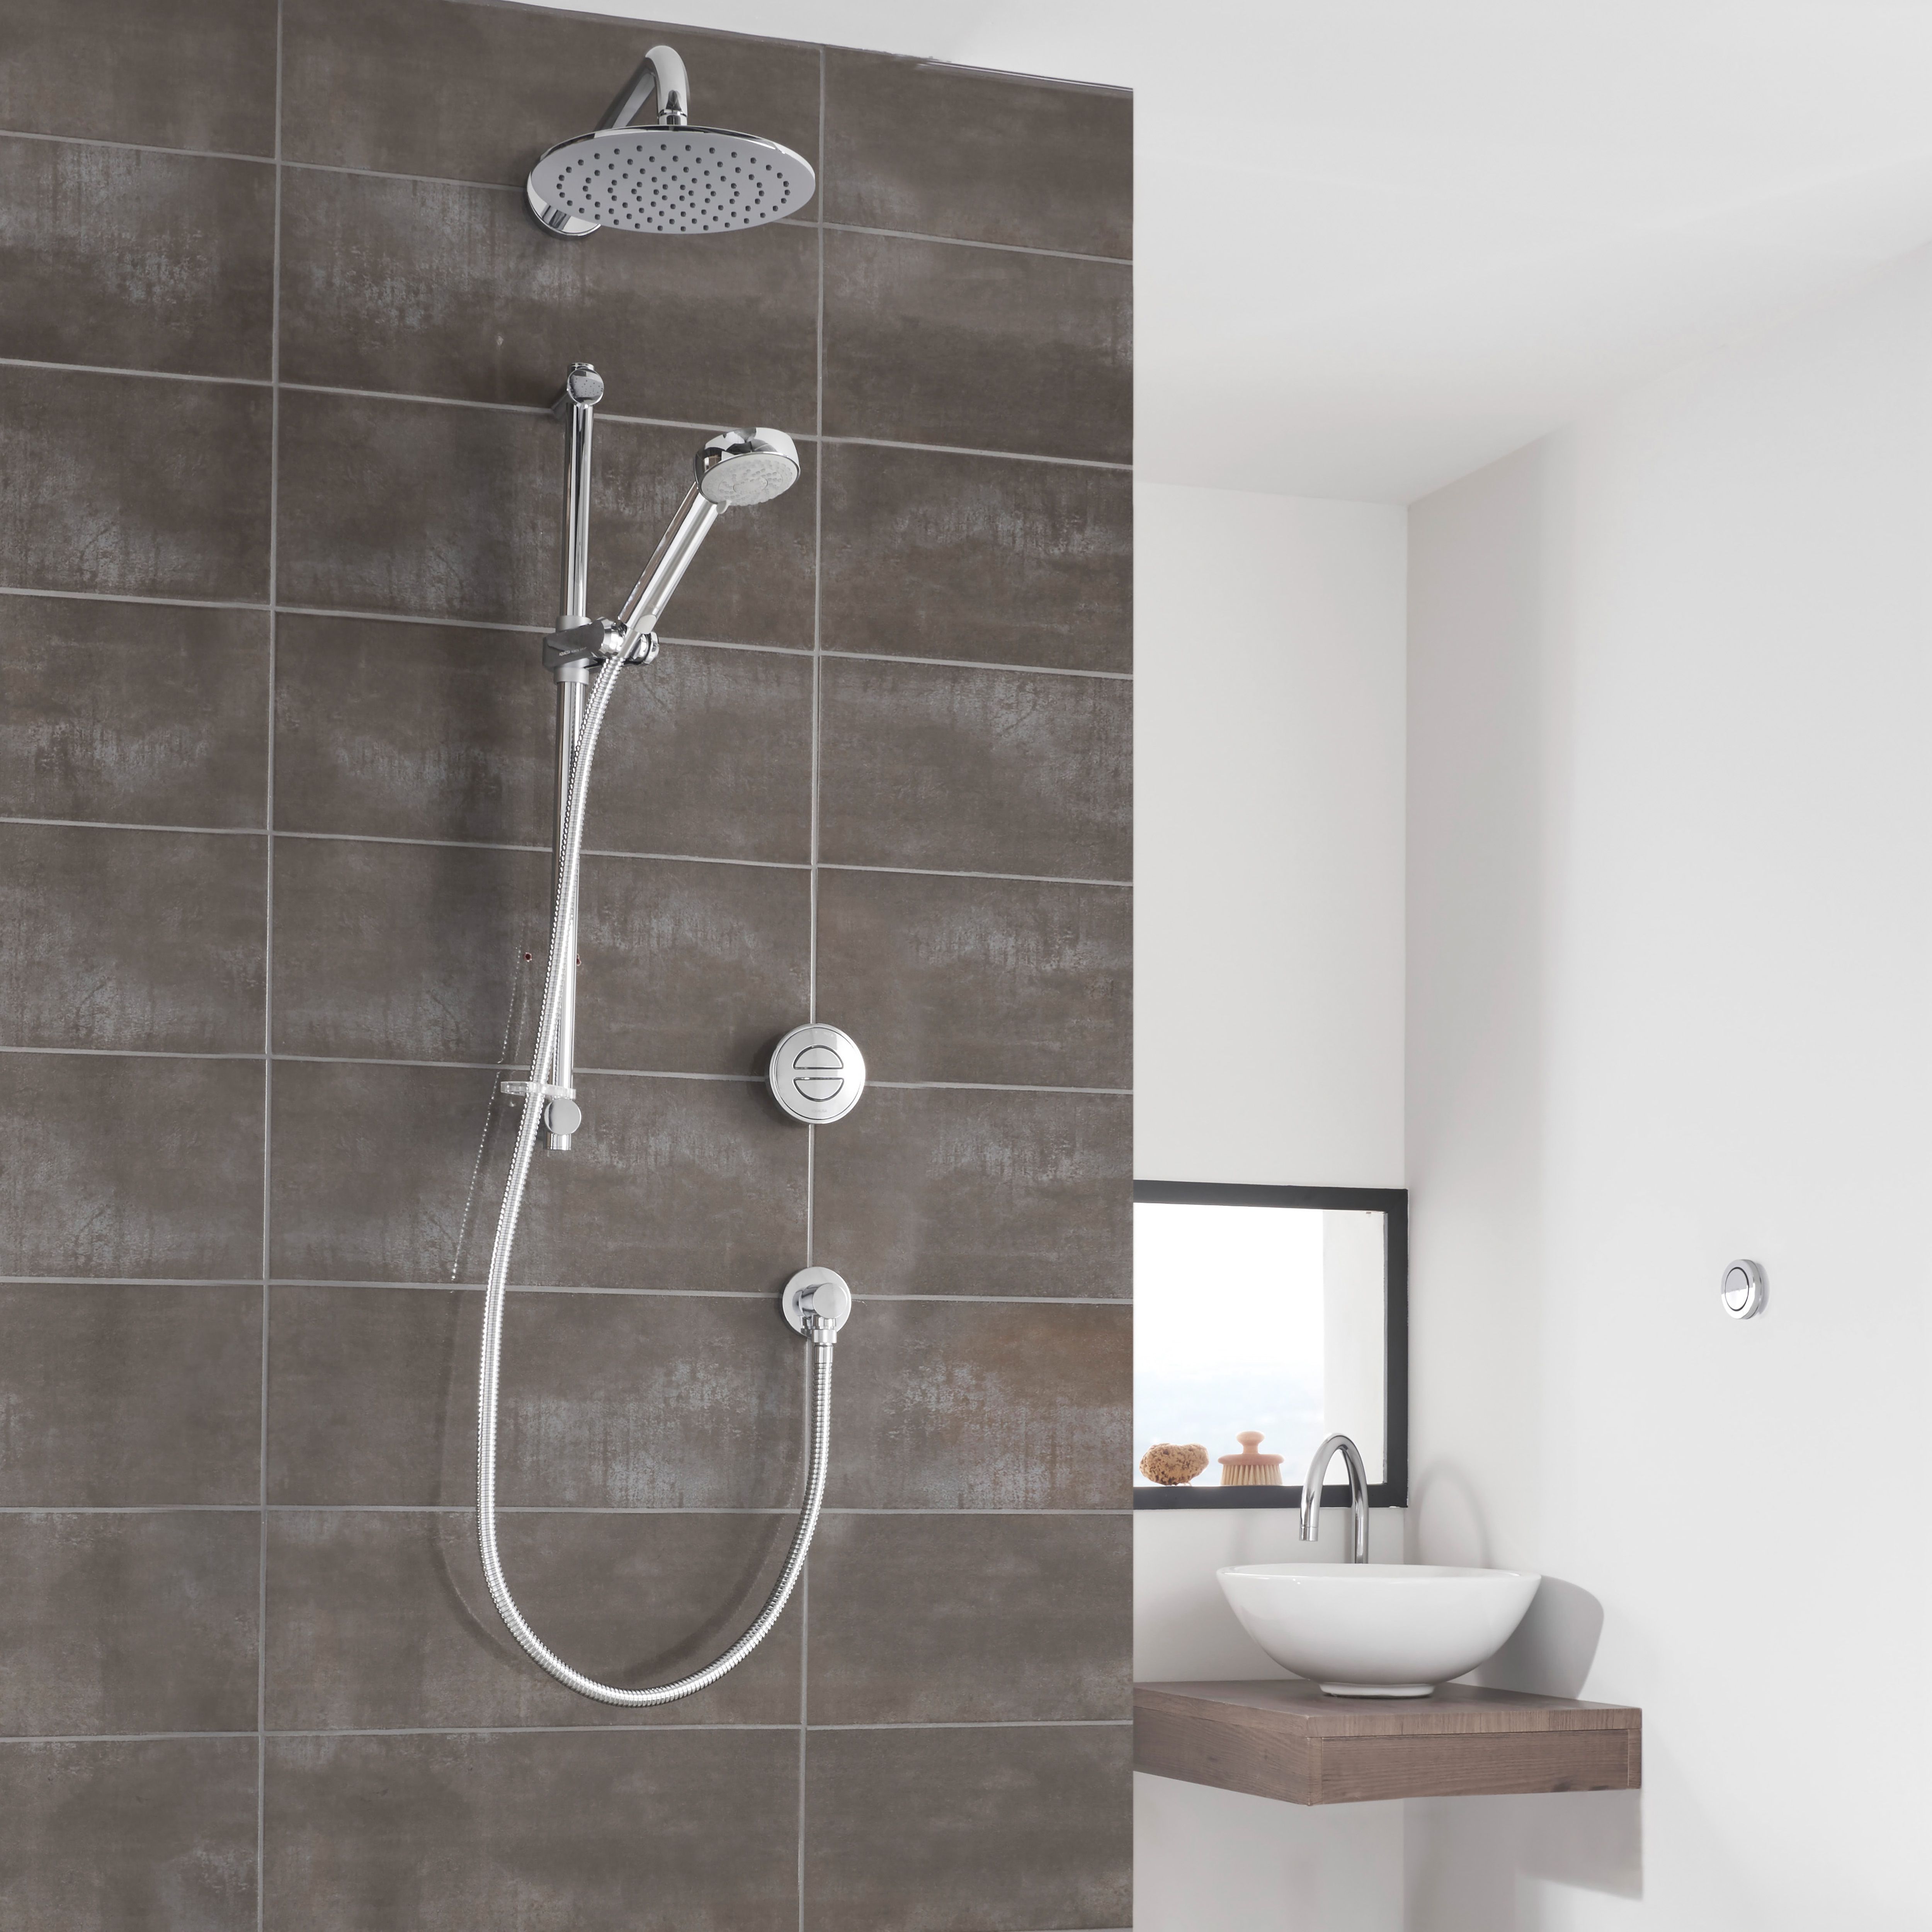 Aqualisa Smart Link Concealed valve Gravity-pumped Wall fed Smart Digital Shower with Adjustable